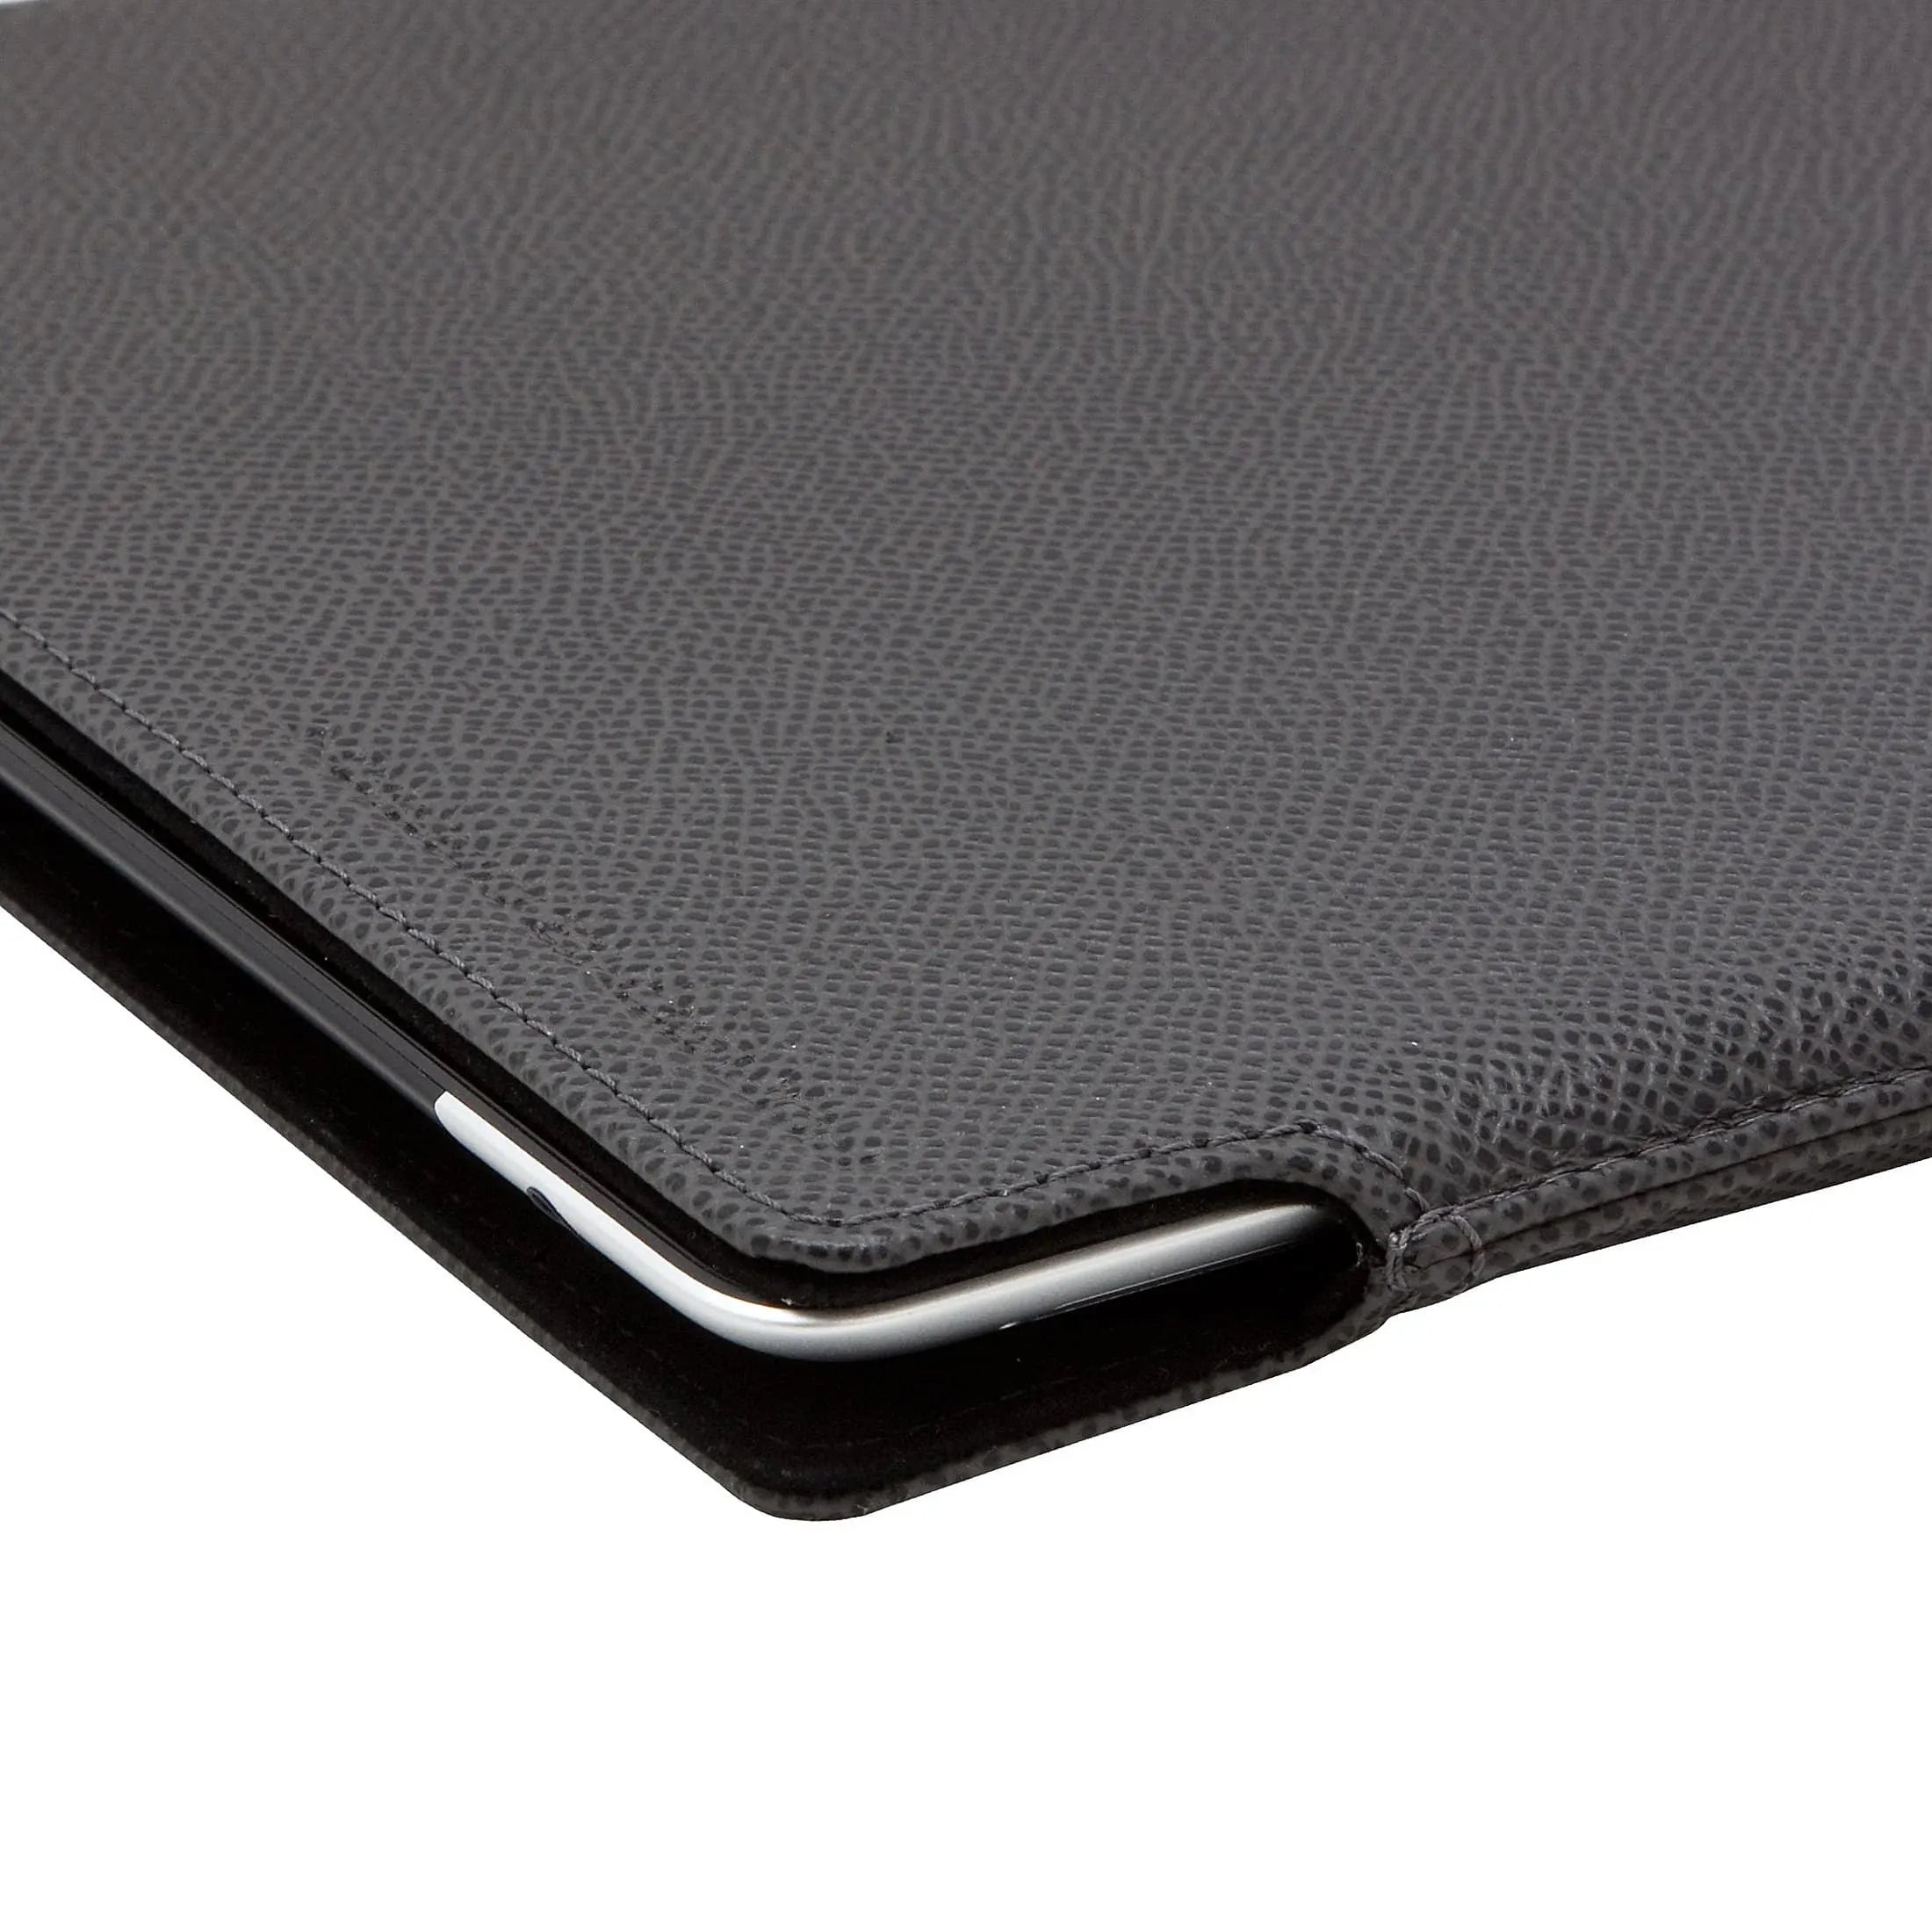 Porsche Design French Classic 2.0 Case Hülle für iPad 4 - dark grey